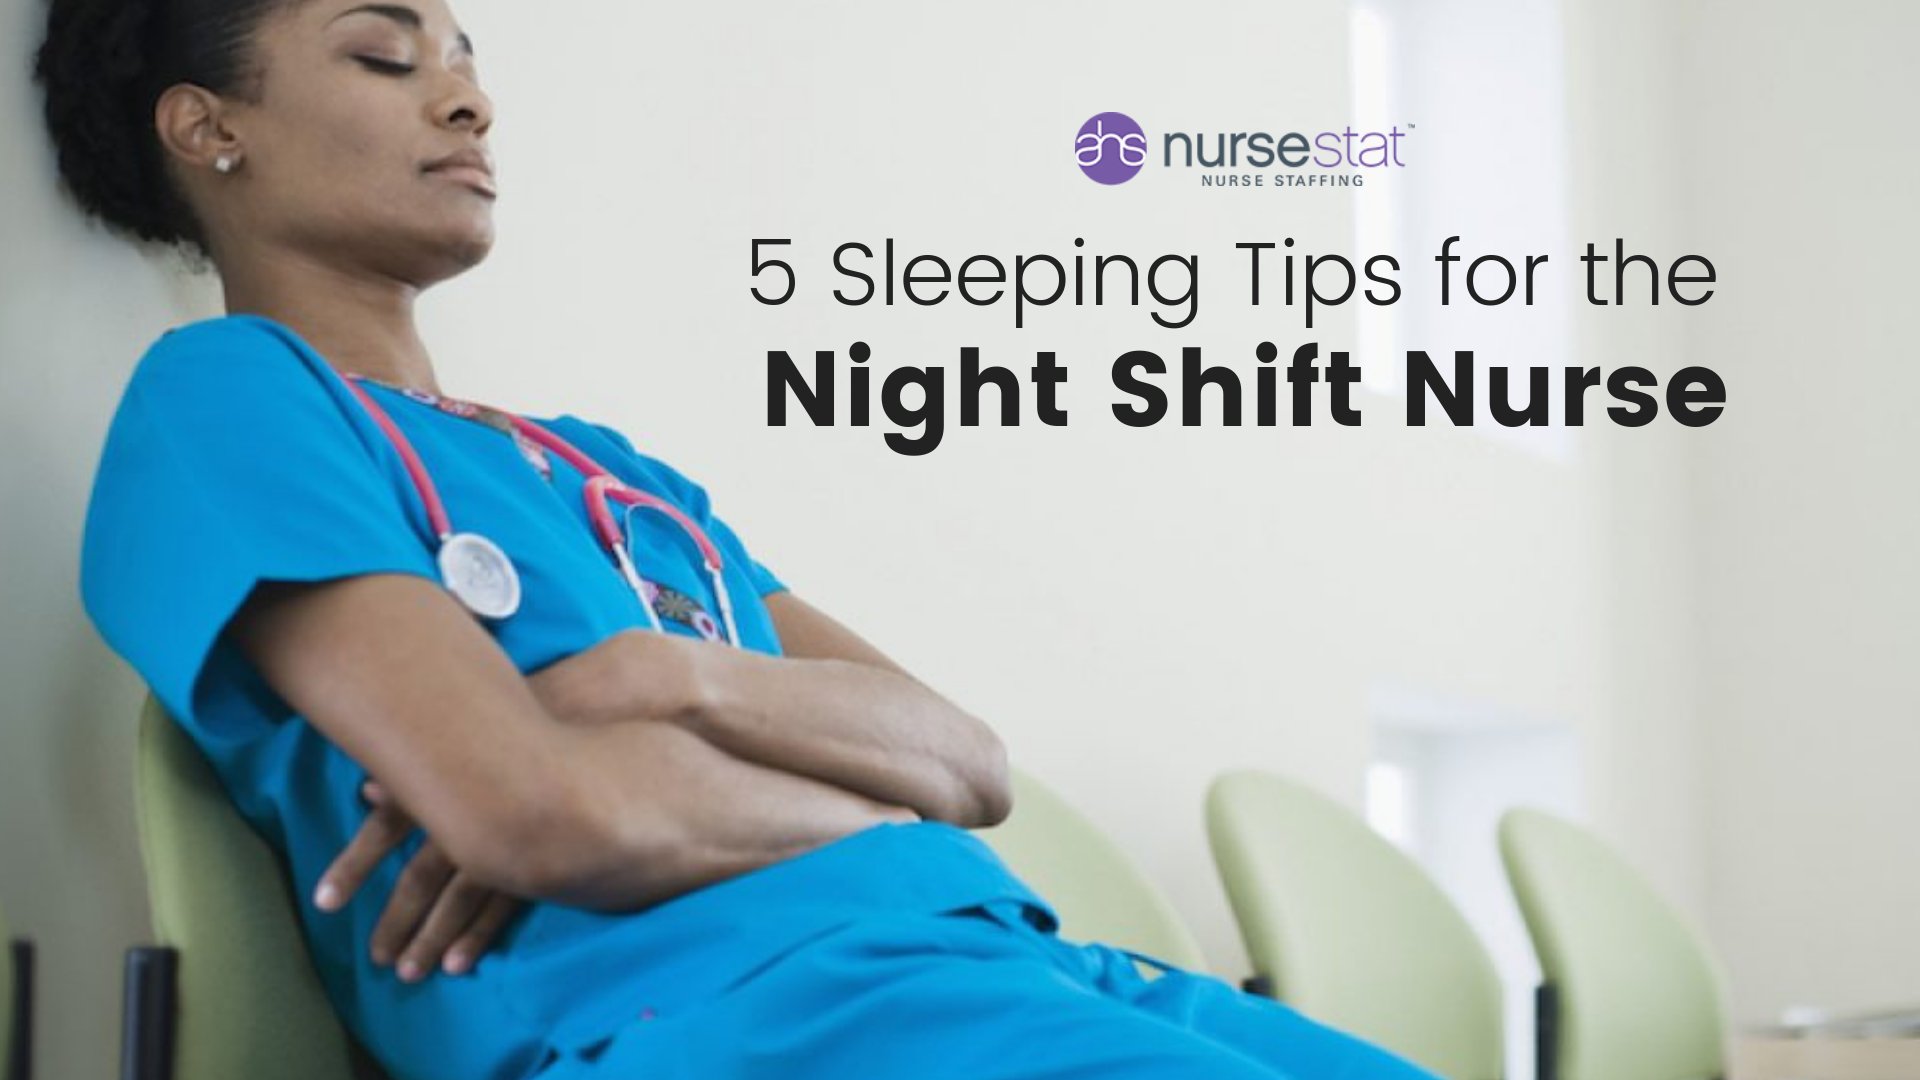 5 Sleeping Tips for the Night Shift Nurse - AHS NurseStat